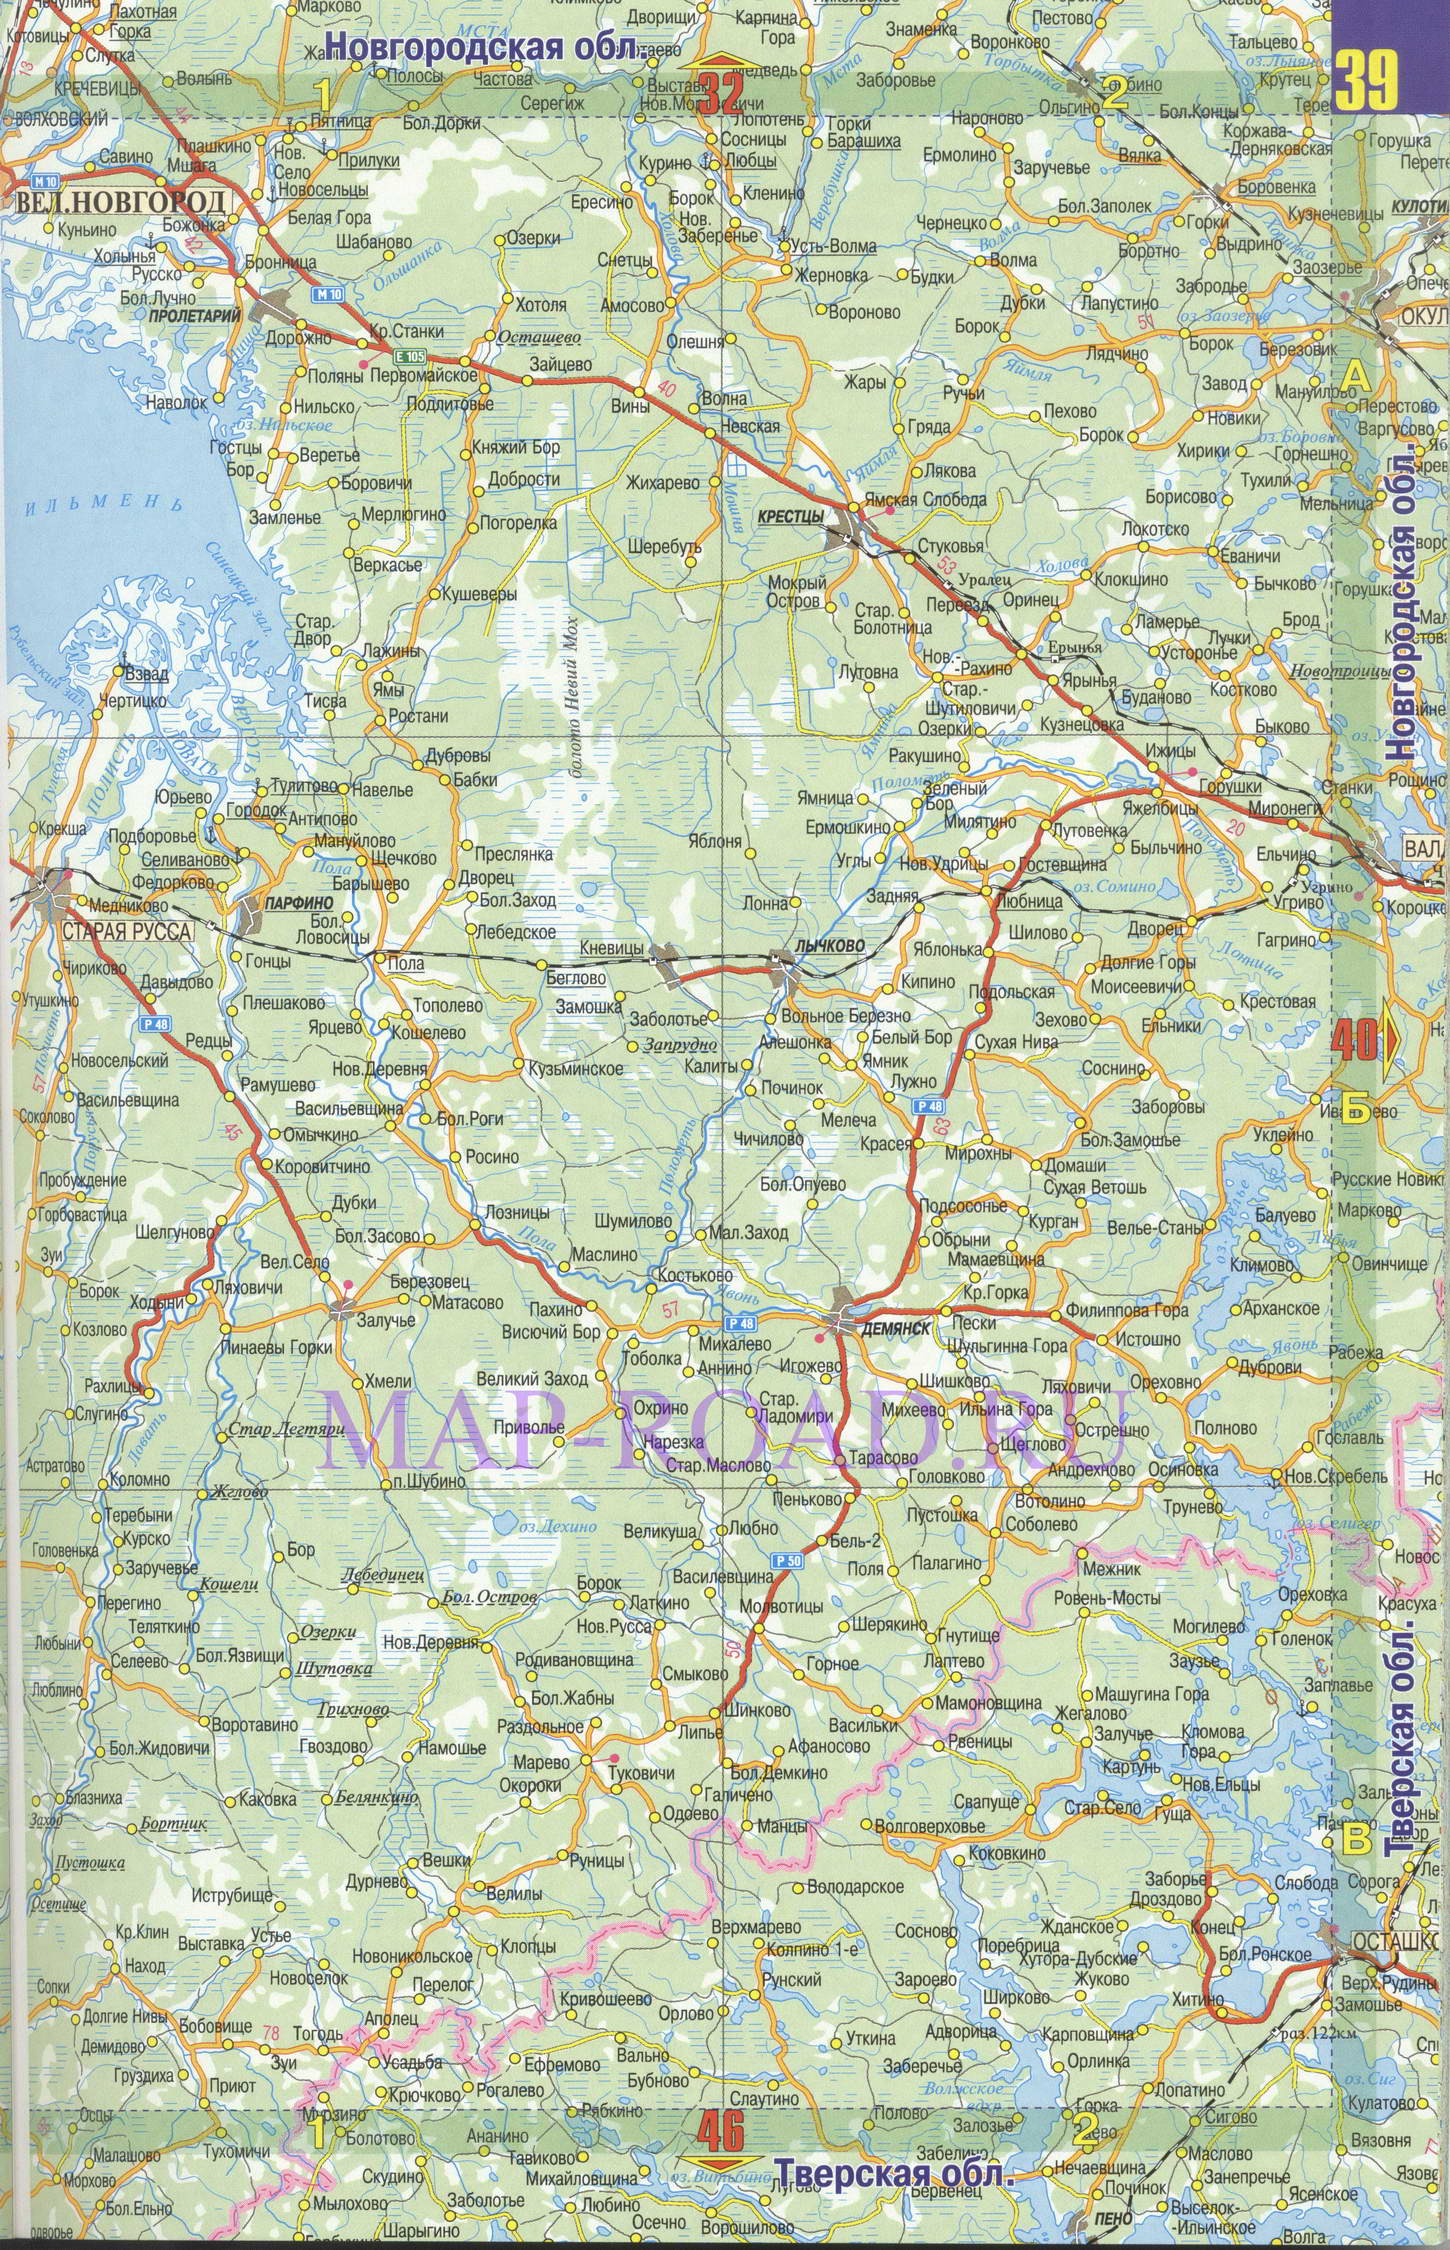 Подробная карта дорог Новгородской области. Карта автомобильных дорог - Новгородская область, B0 - 